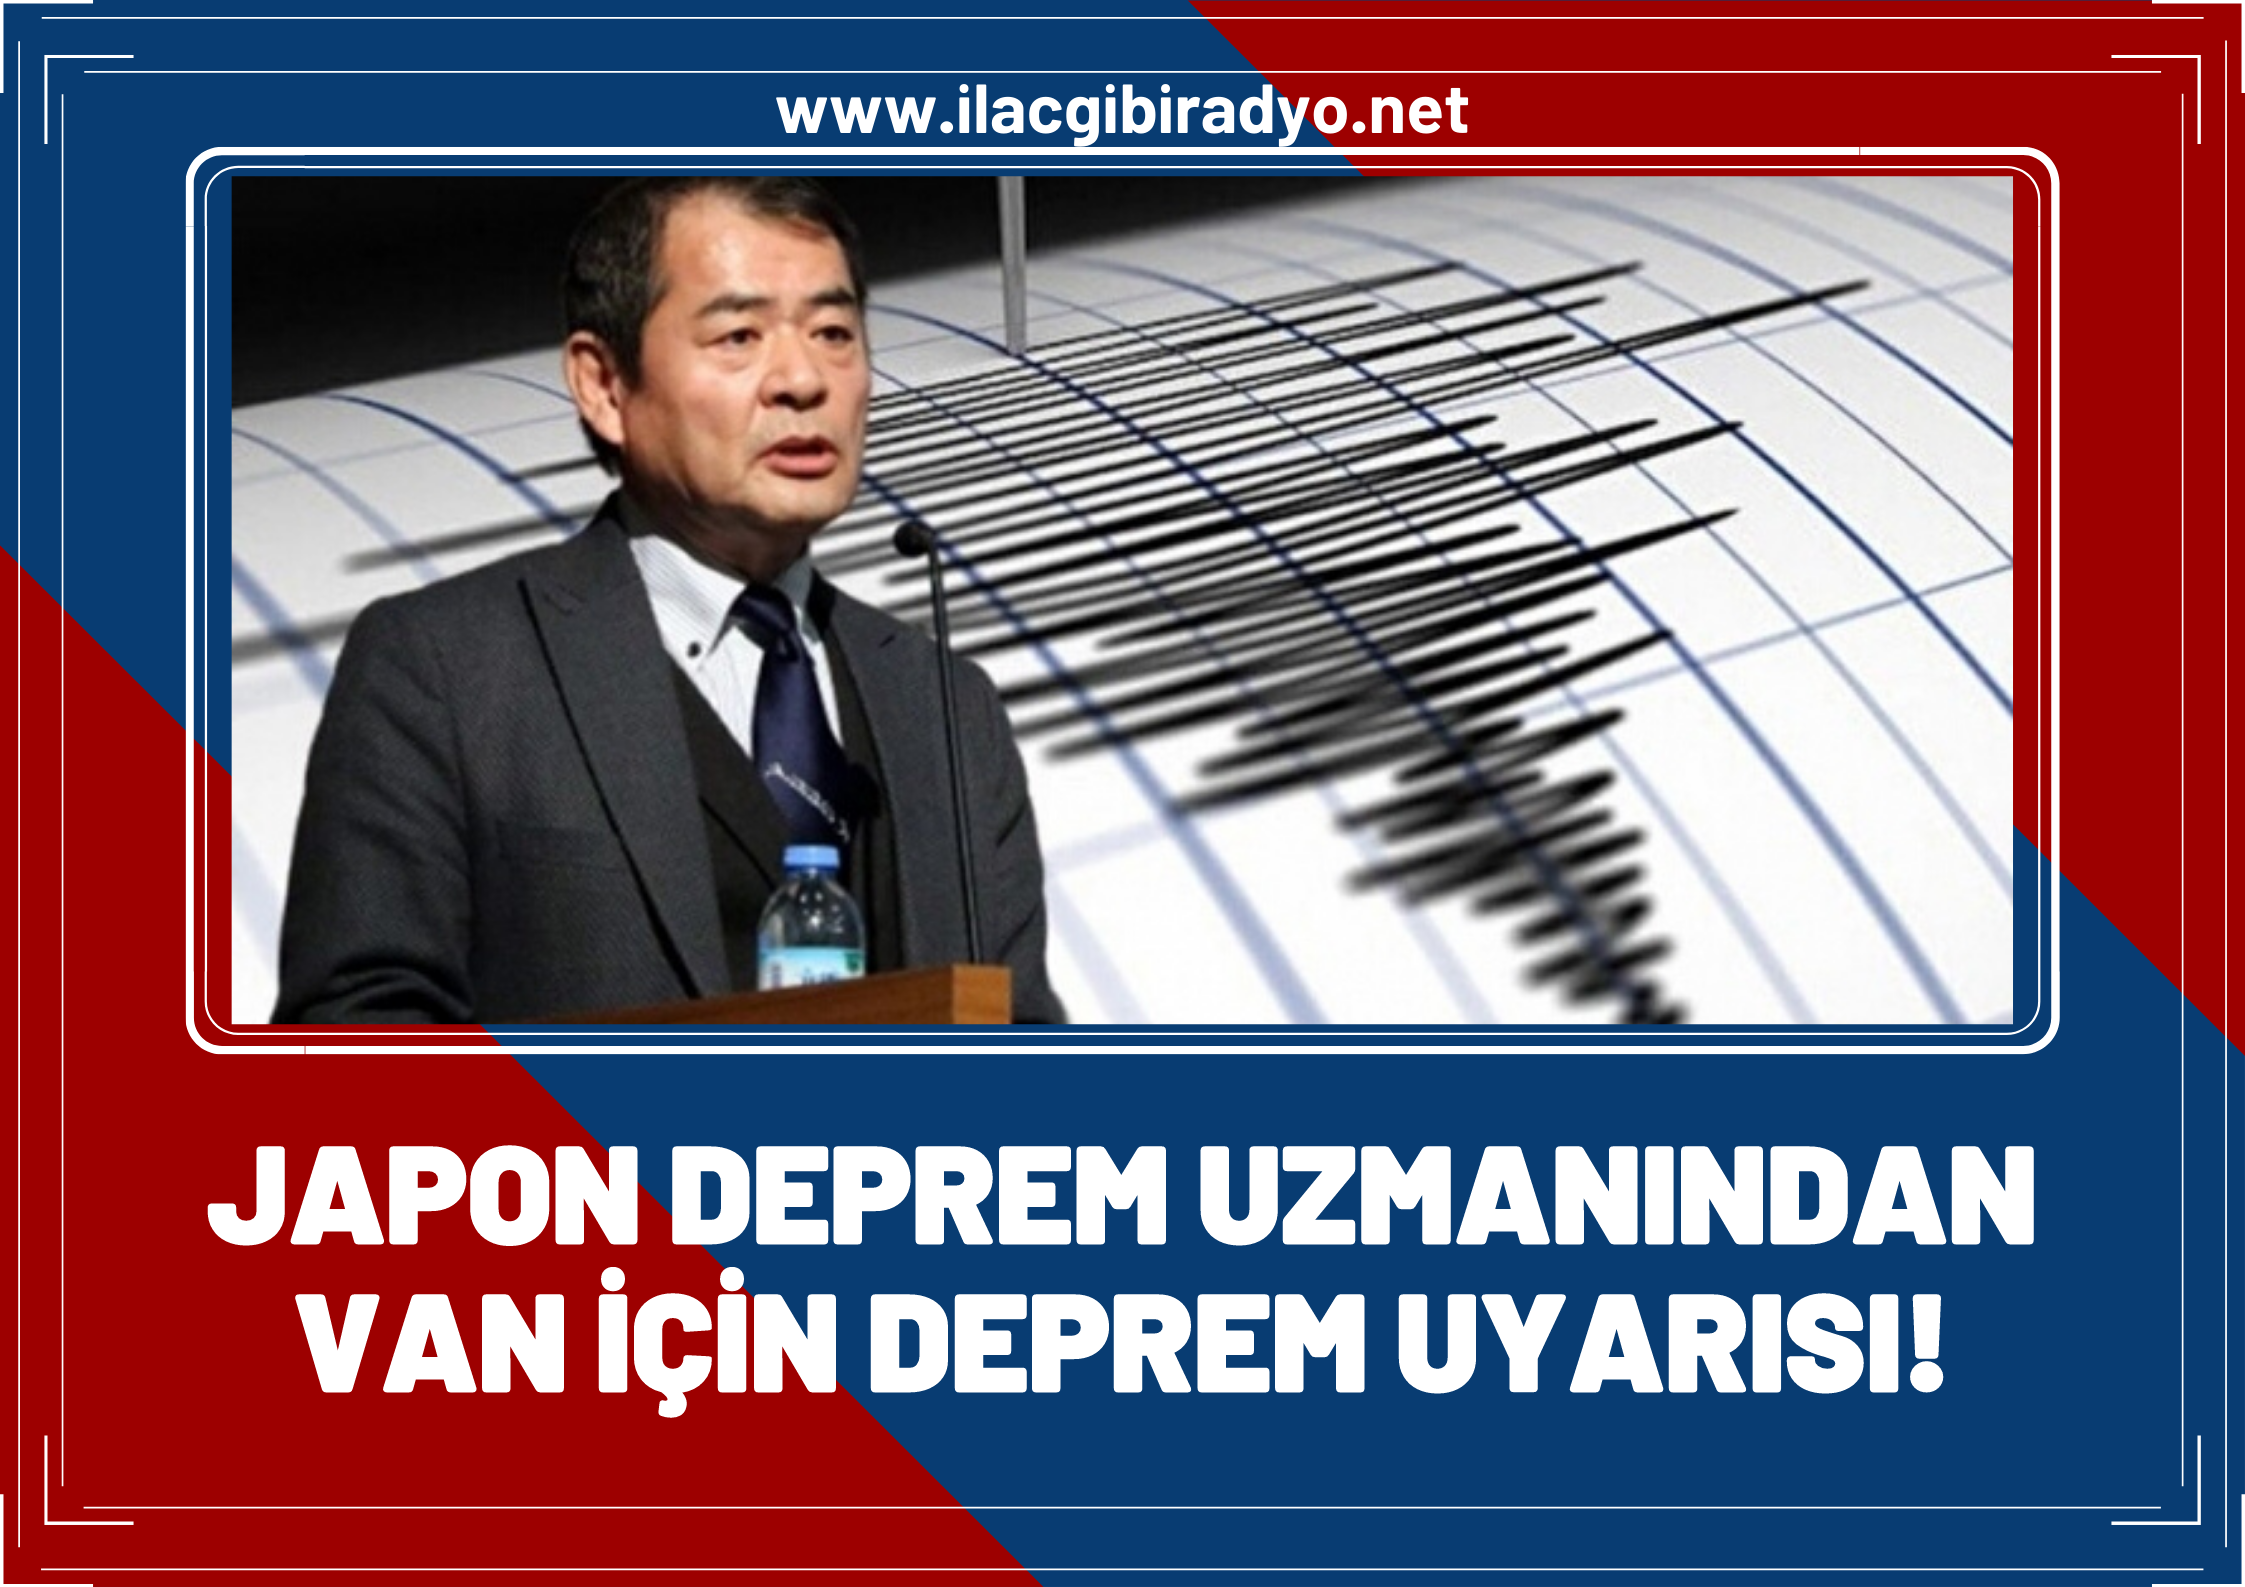 Japon deprem uzmanı uyardı: Van’da deprem tehlikesi!